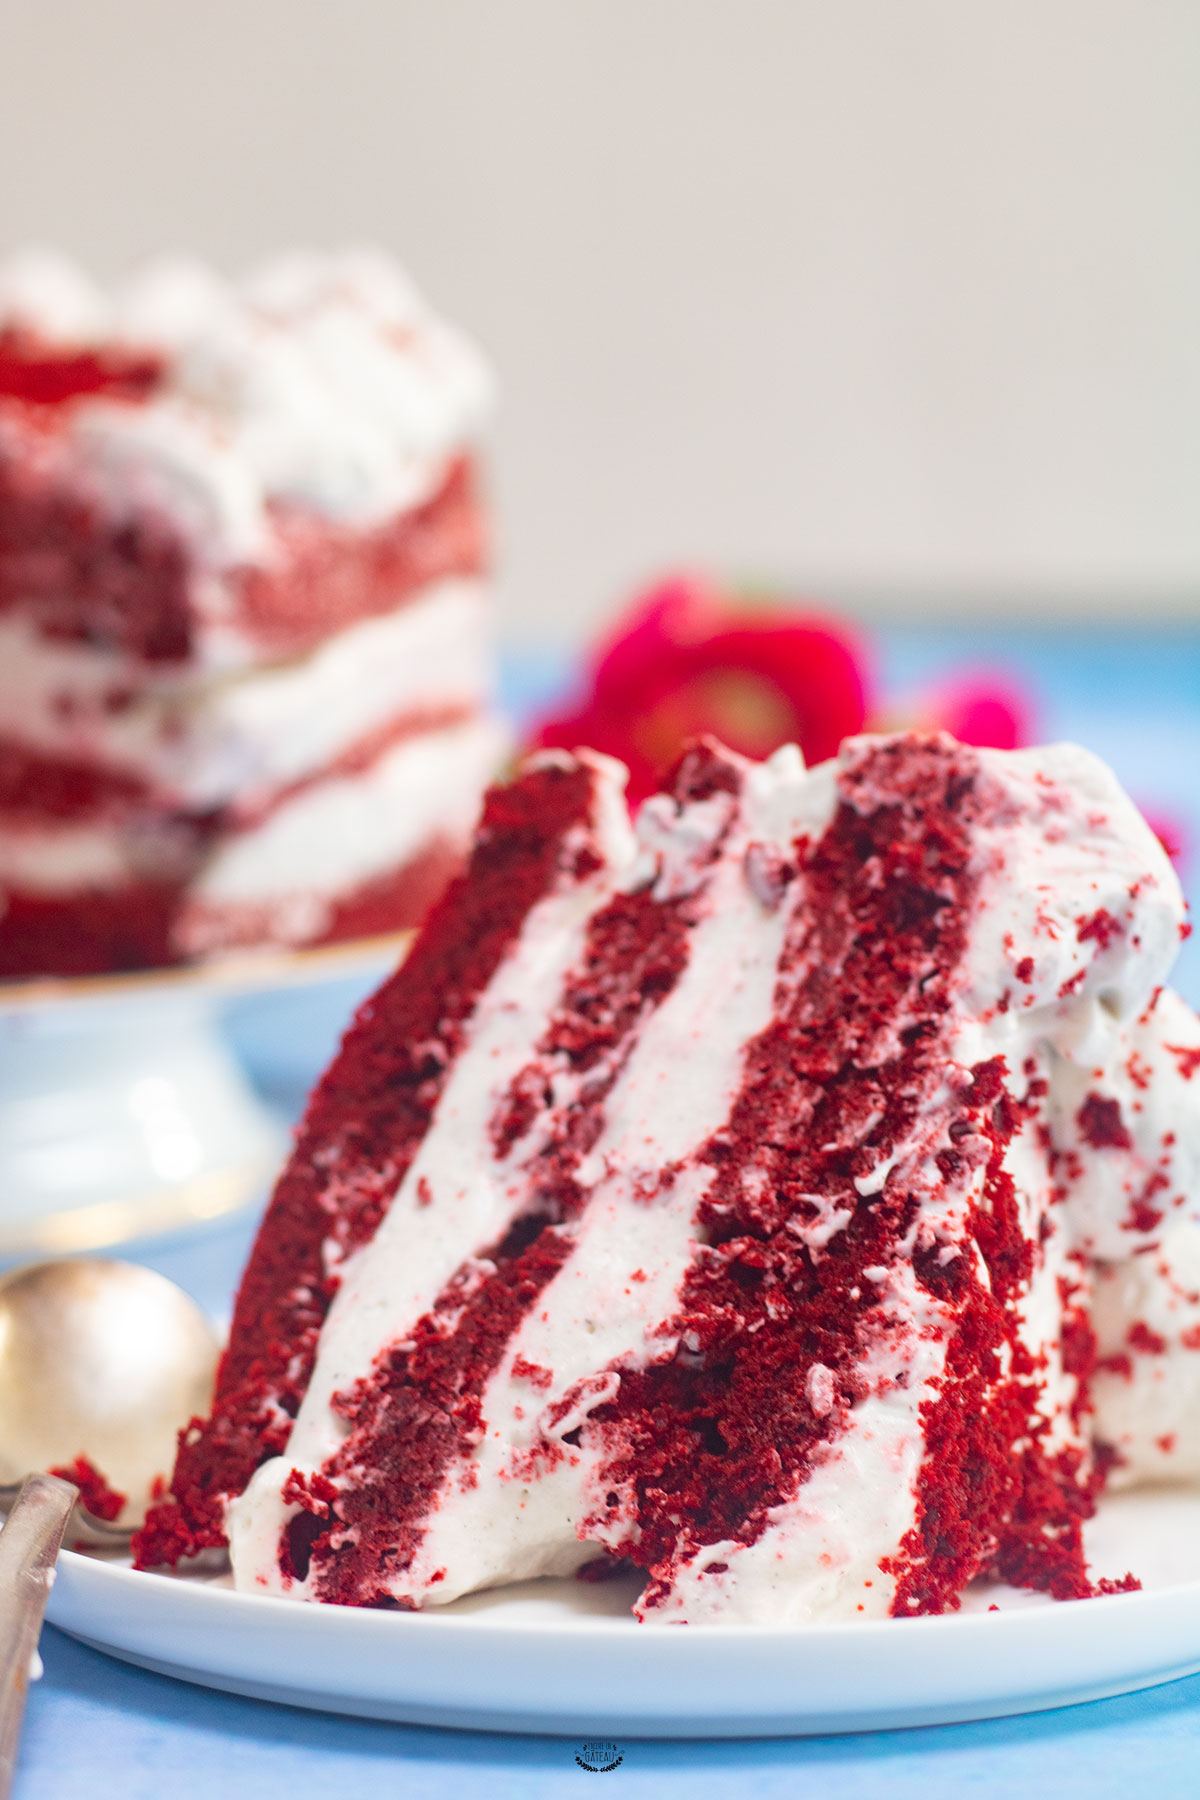 Red Velvet Cake - Recette du gâteau rouge velours irrésistible